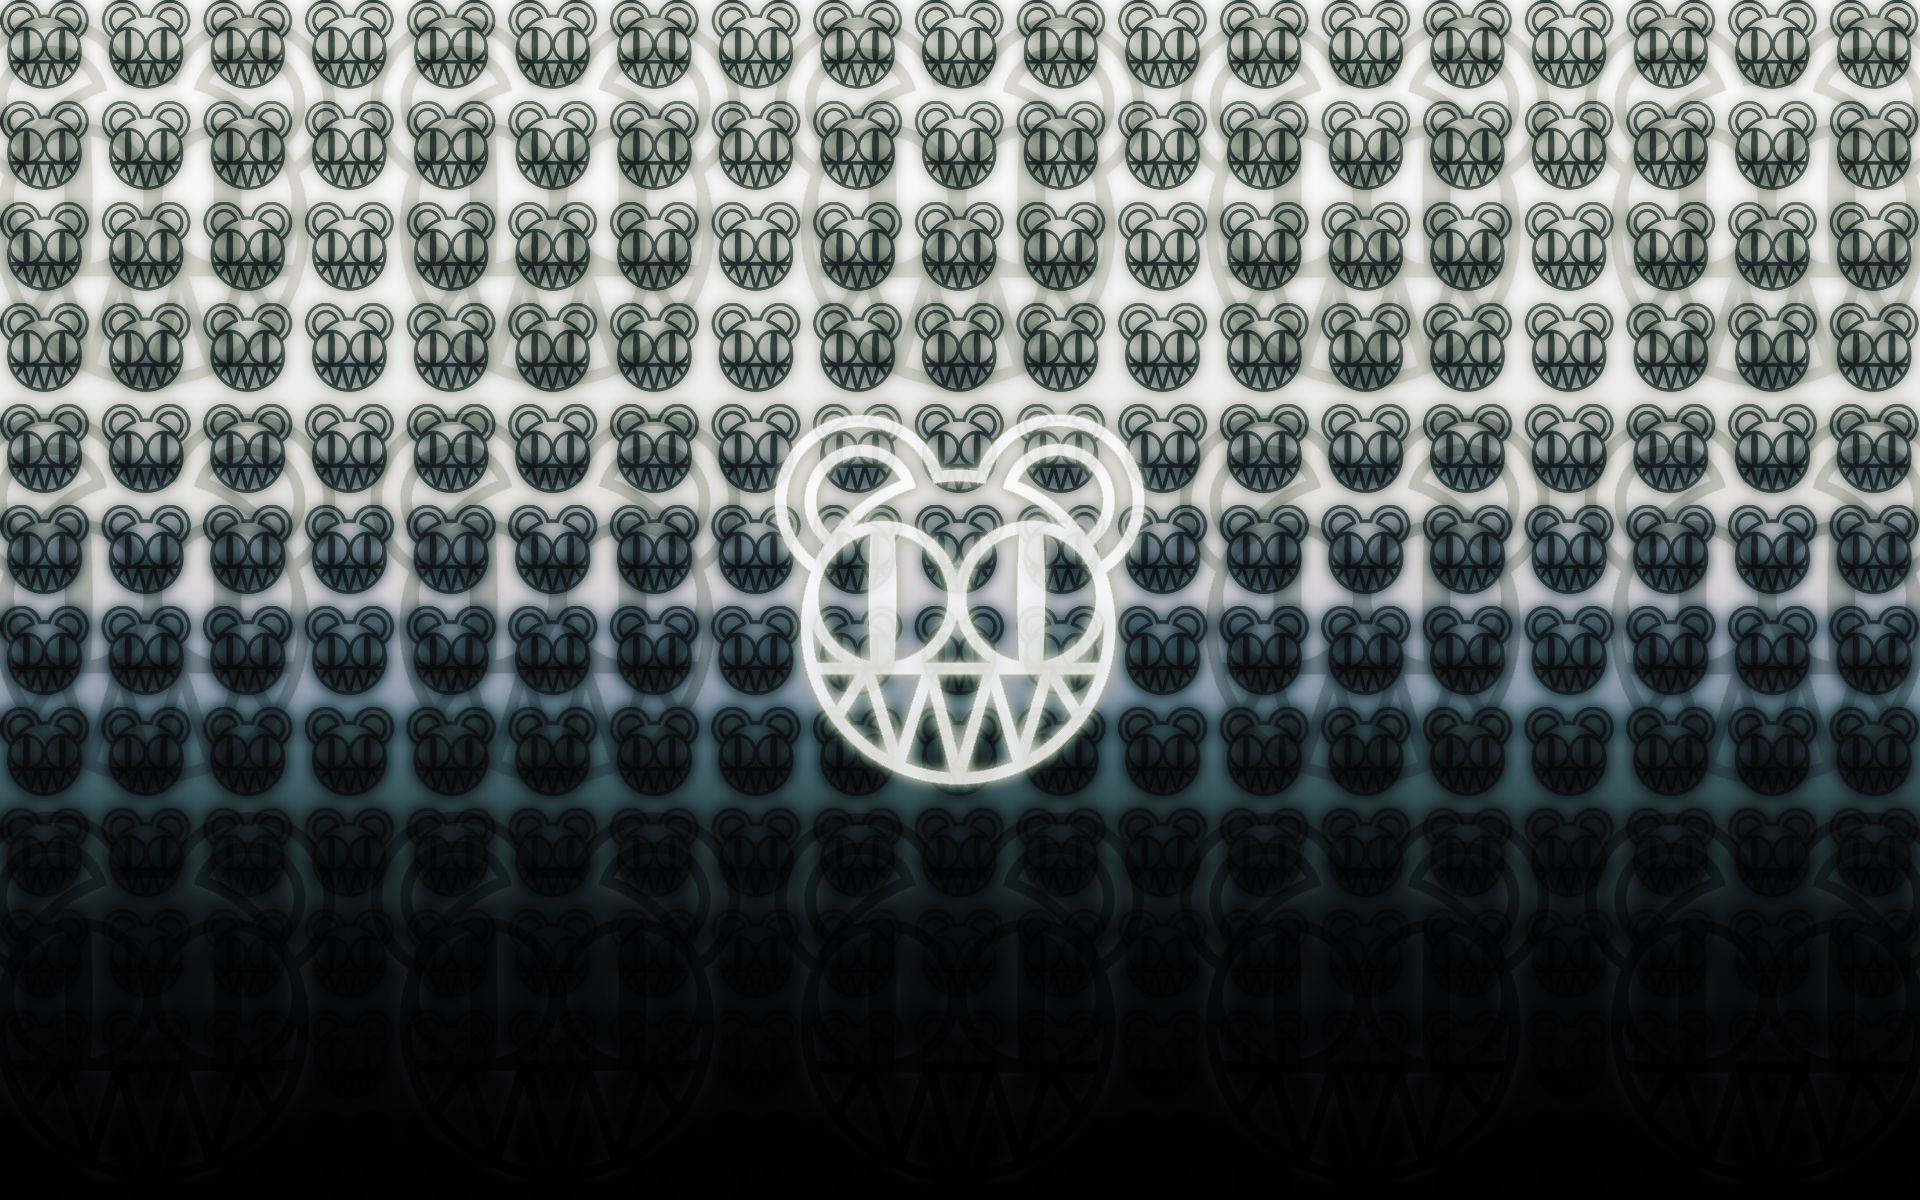 Radioheadbärenkopf-klone Wallpaper